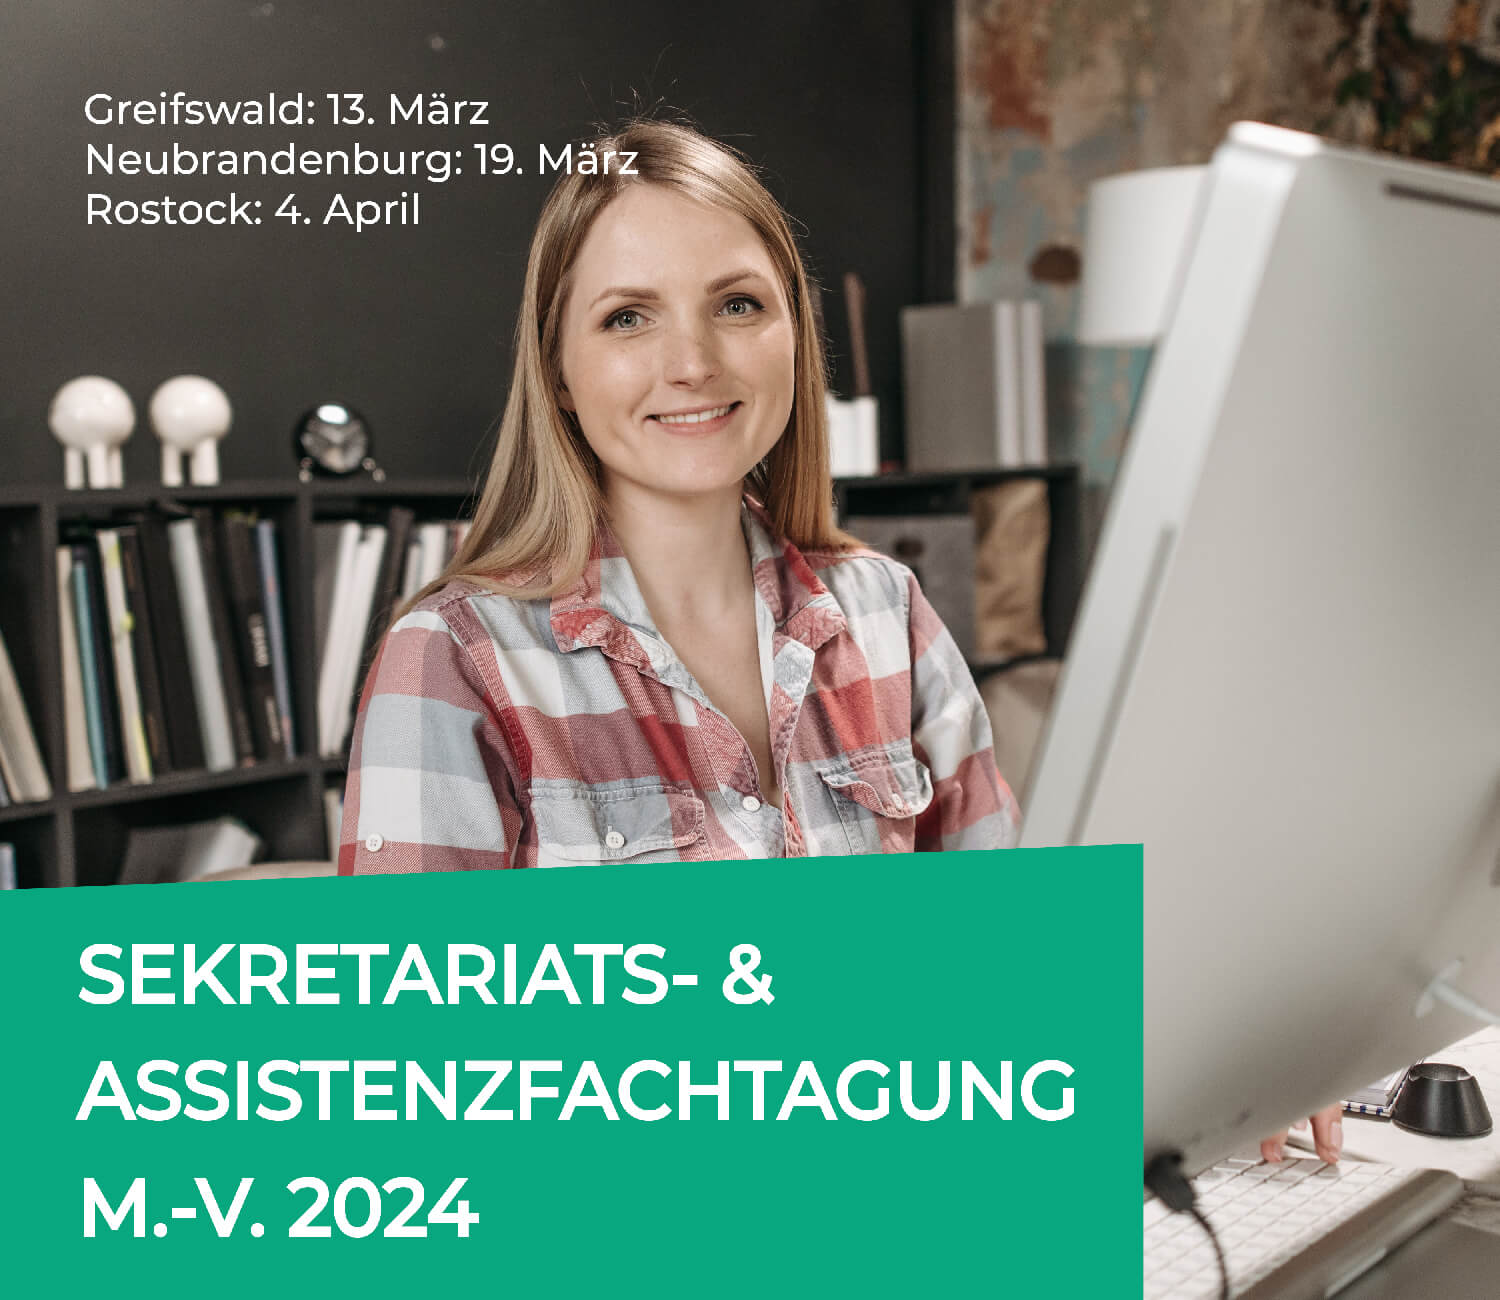 Sekretariatsfachtagung M.-V. Rostock, Neubrandenburg, Greifswald